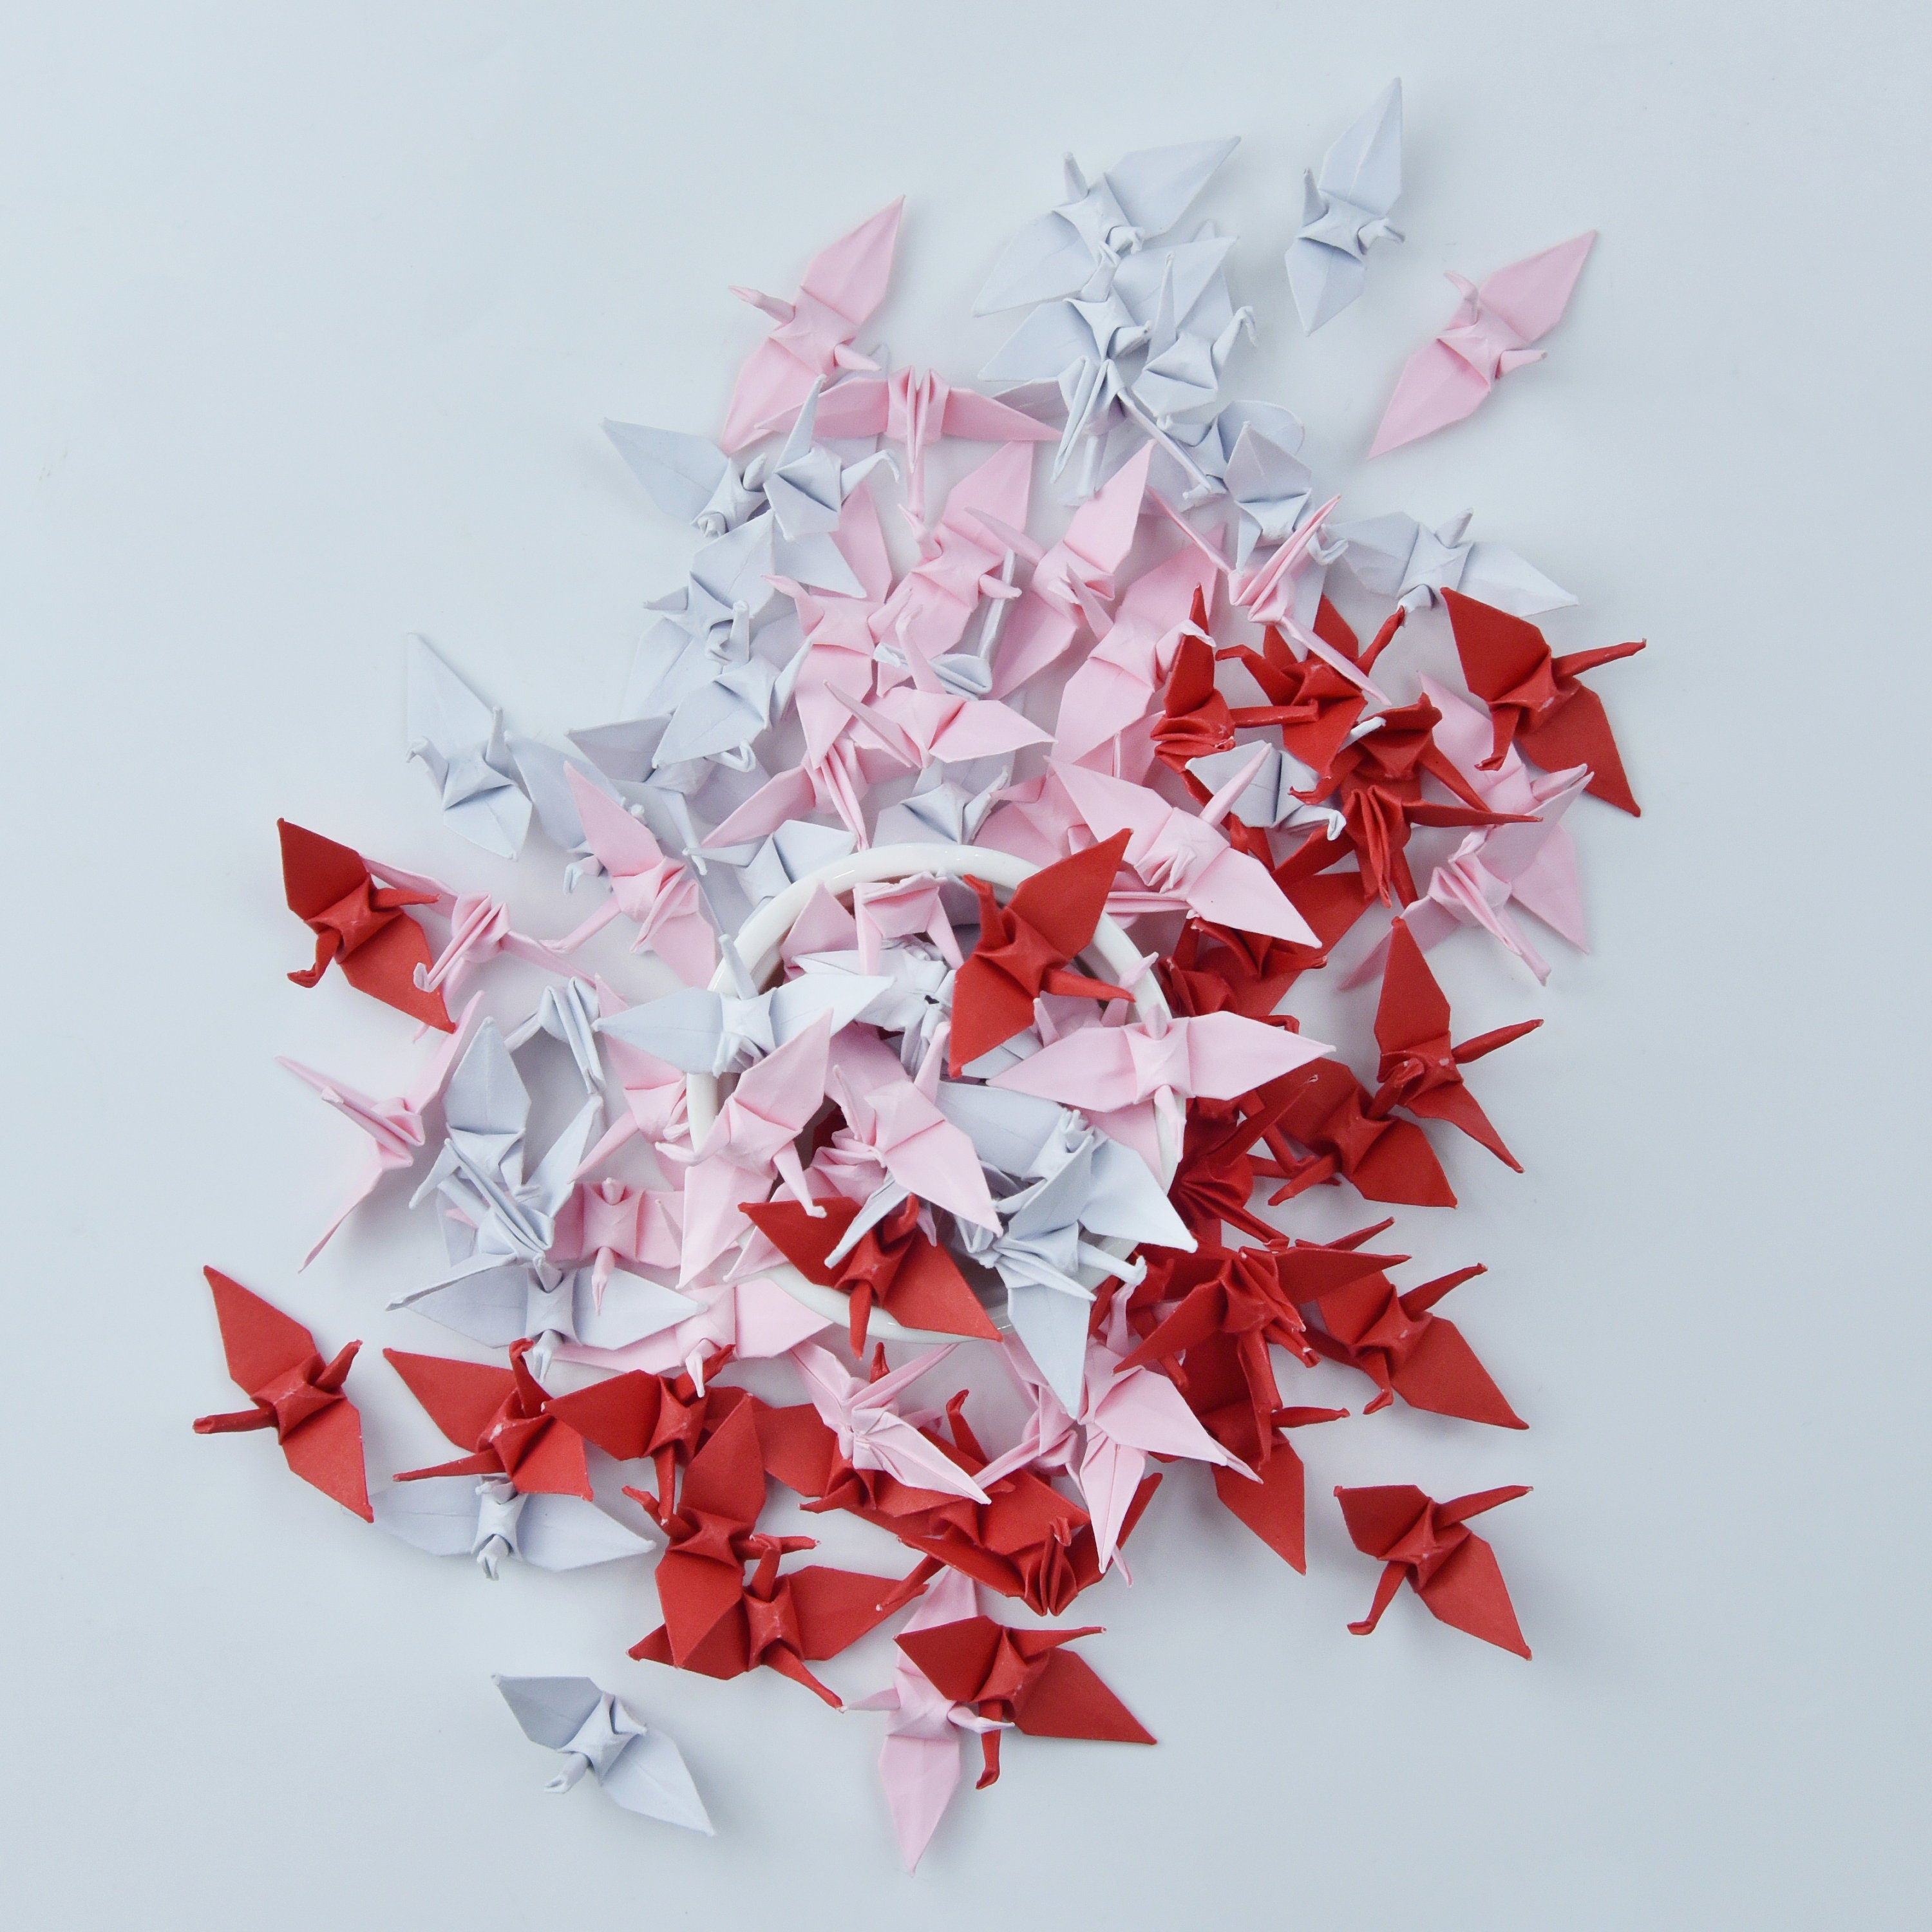 1000 gru di carta origami tonalità rosso rosa bianco - piccola 3,81 cm (1,5 pollici) - per feste di matrimonio, regali di San Valentino